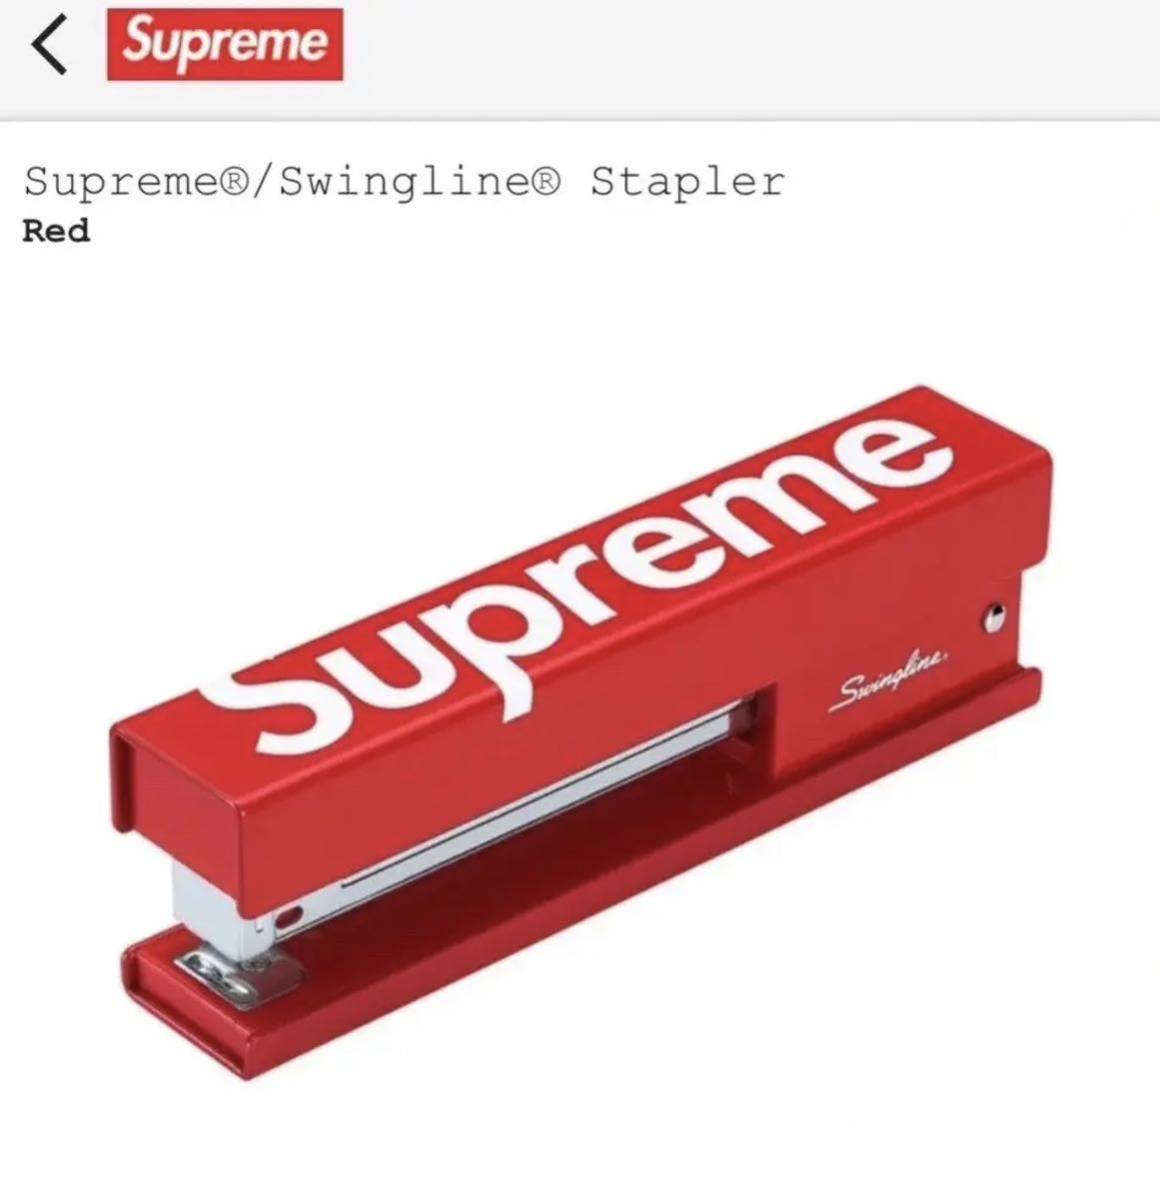 レア 新品 送料無料 Supreme Swingline Stapler シュプリーム スイングライン ステープラー ホチキス box logo ボックスロゴ ステッカー付